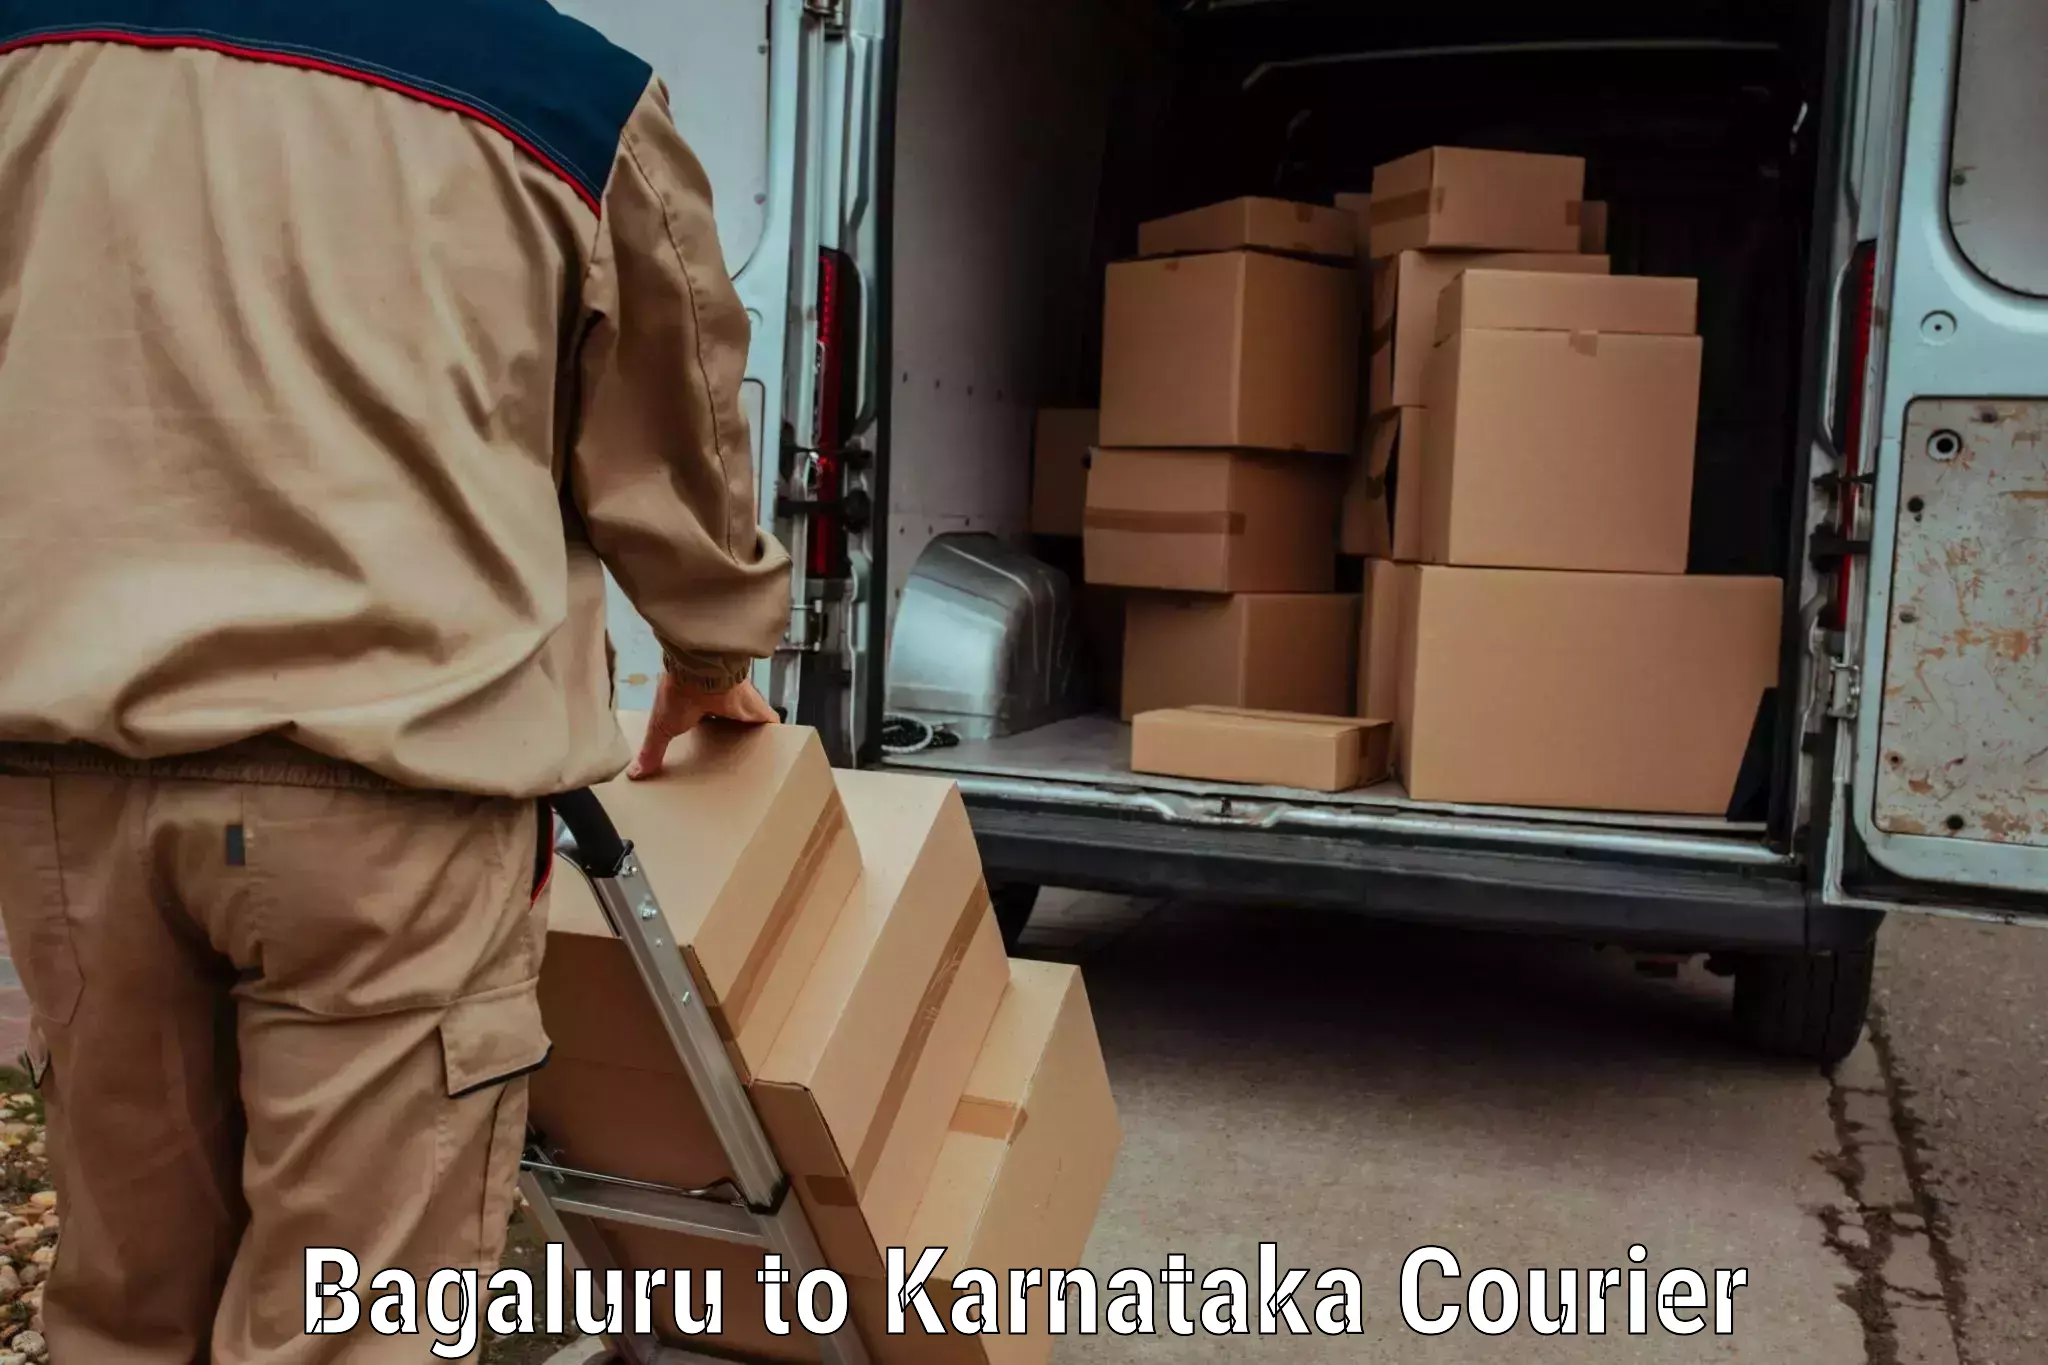 Luggage transport service Bagaluru to Karnataka